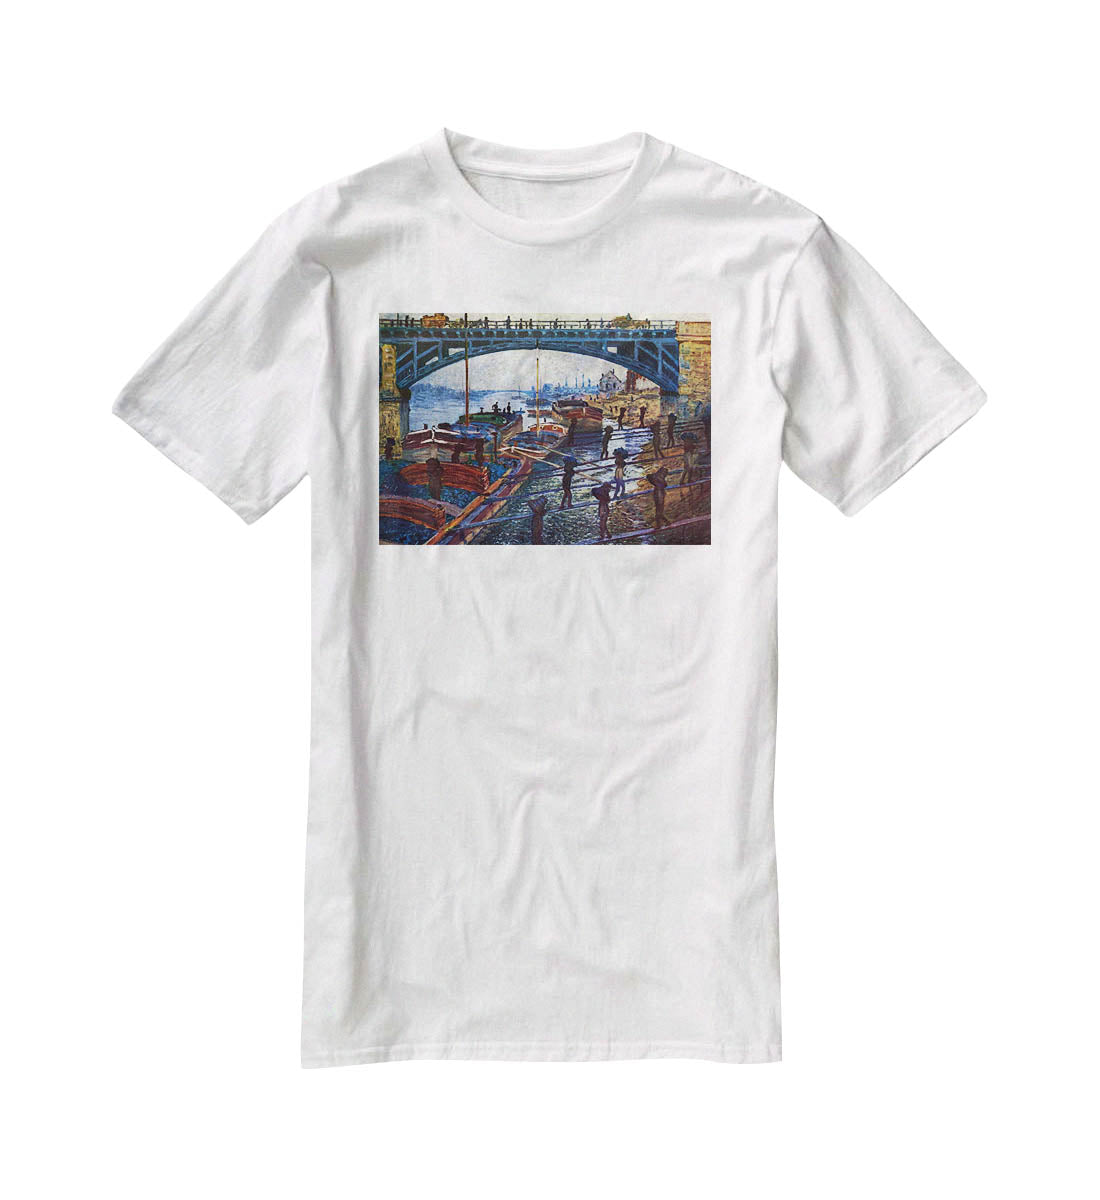 The coal carrier by Monet T-Shirt - Canvas Art Rocks - 5